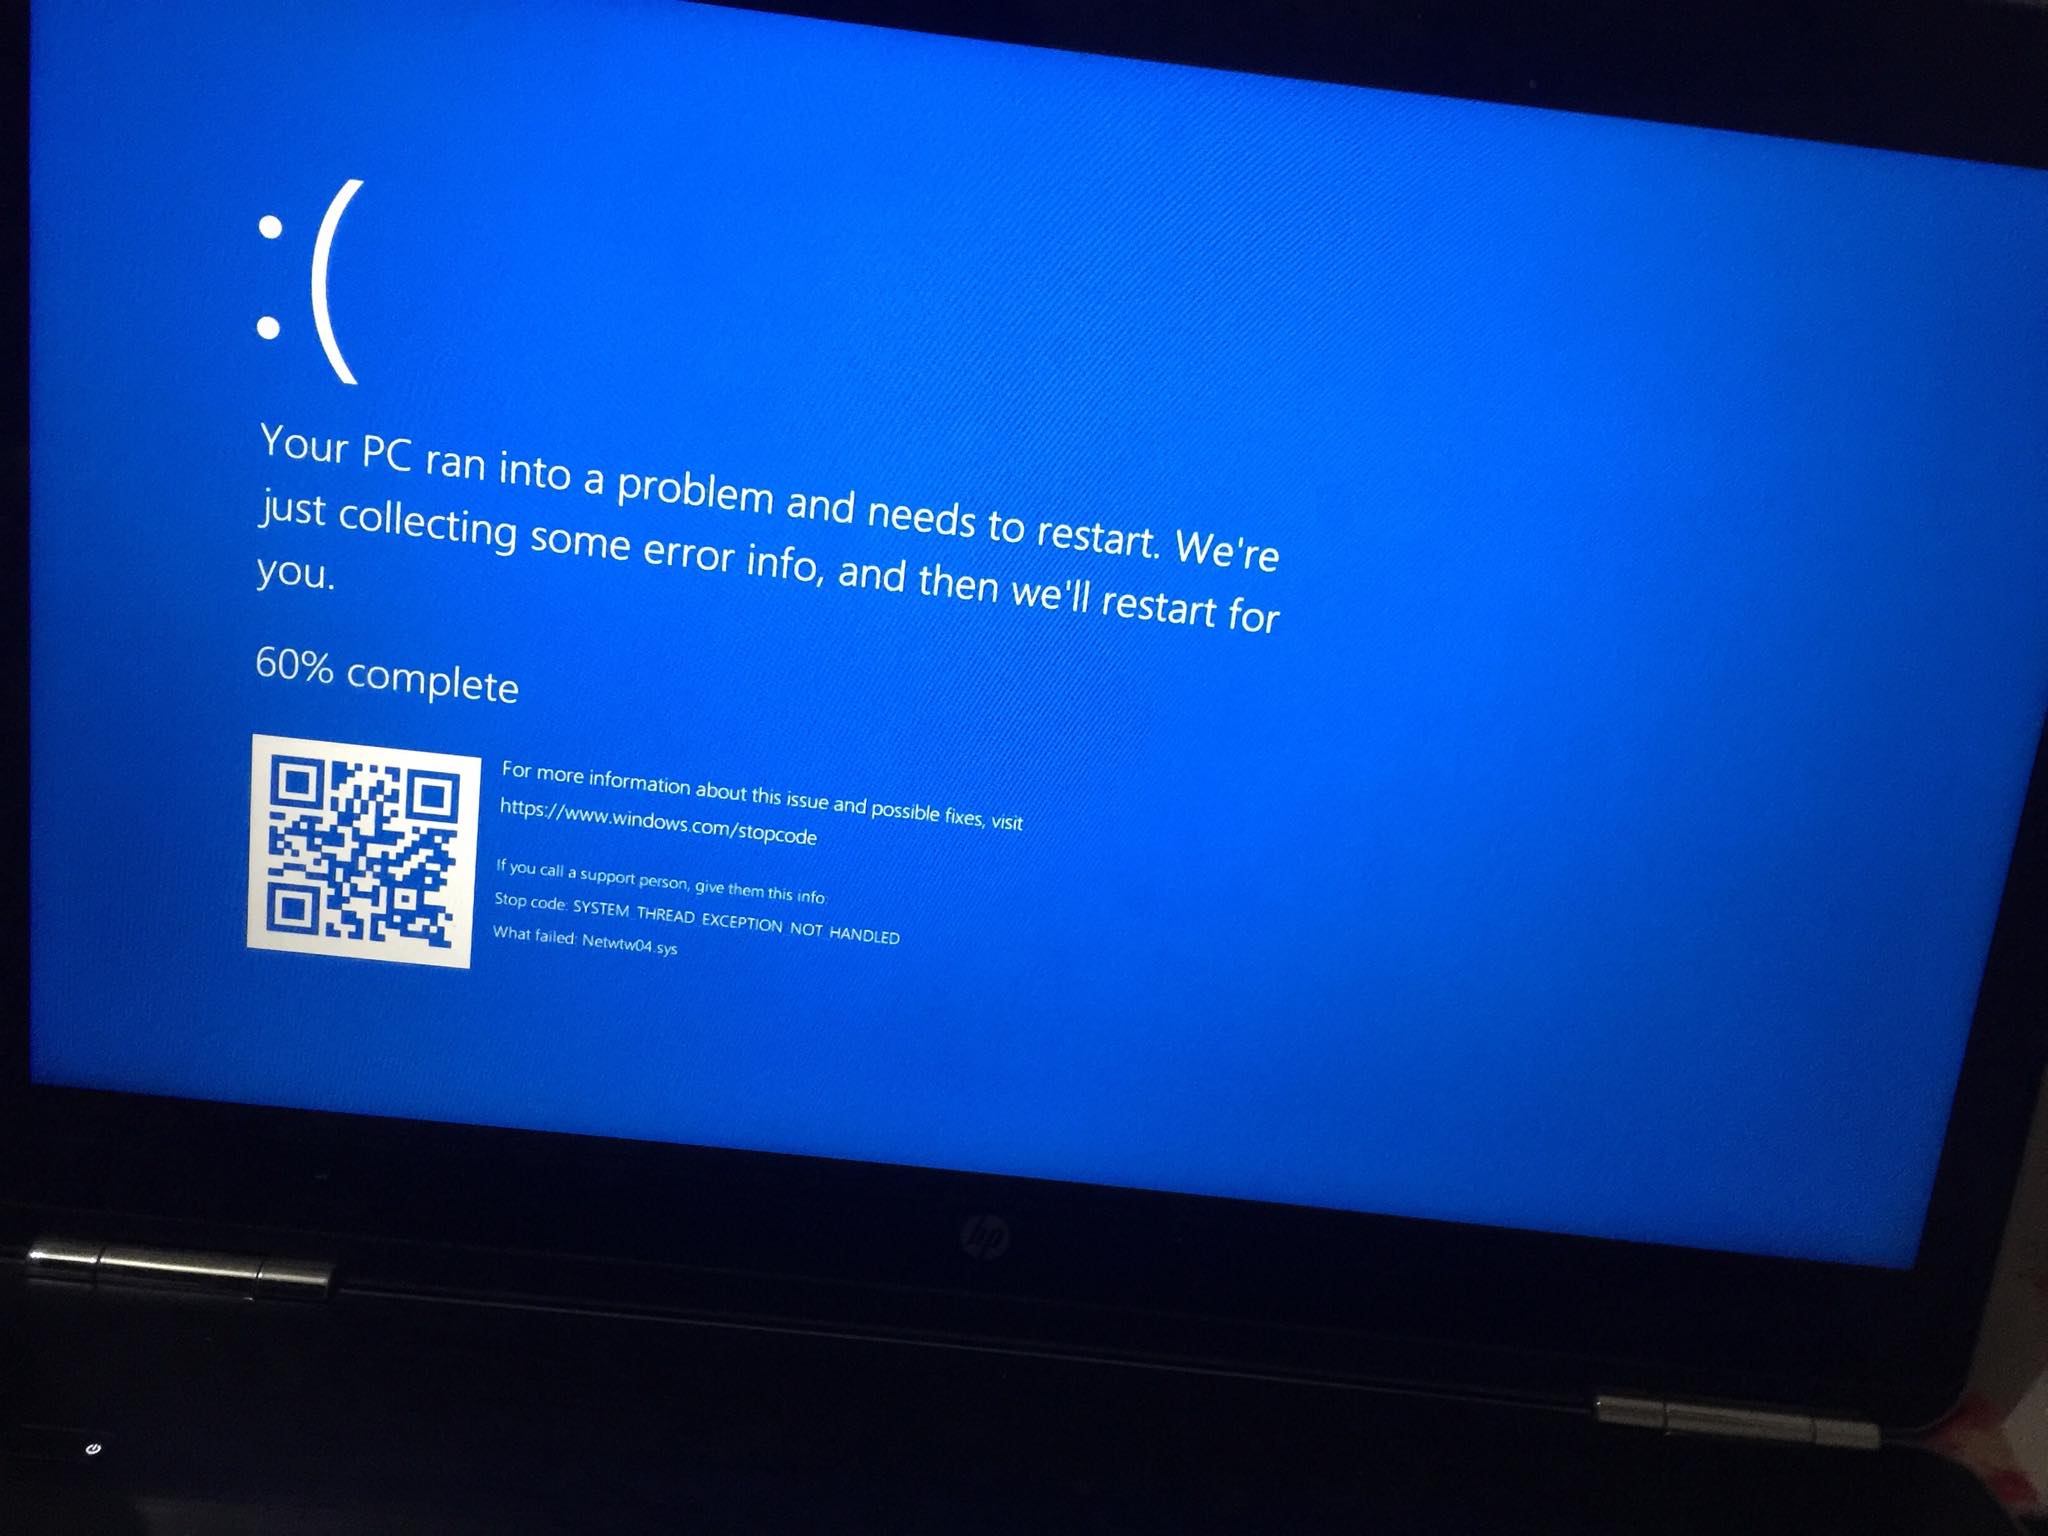 В останавливается системы. Ошибка System thread exception not Handled Windows 10. System thread exception not Handled. Microsoft stop code. Ошибка Майкрософт stopcode Windows.